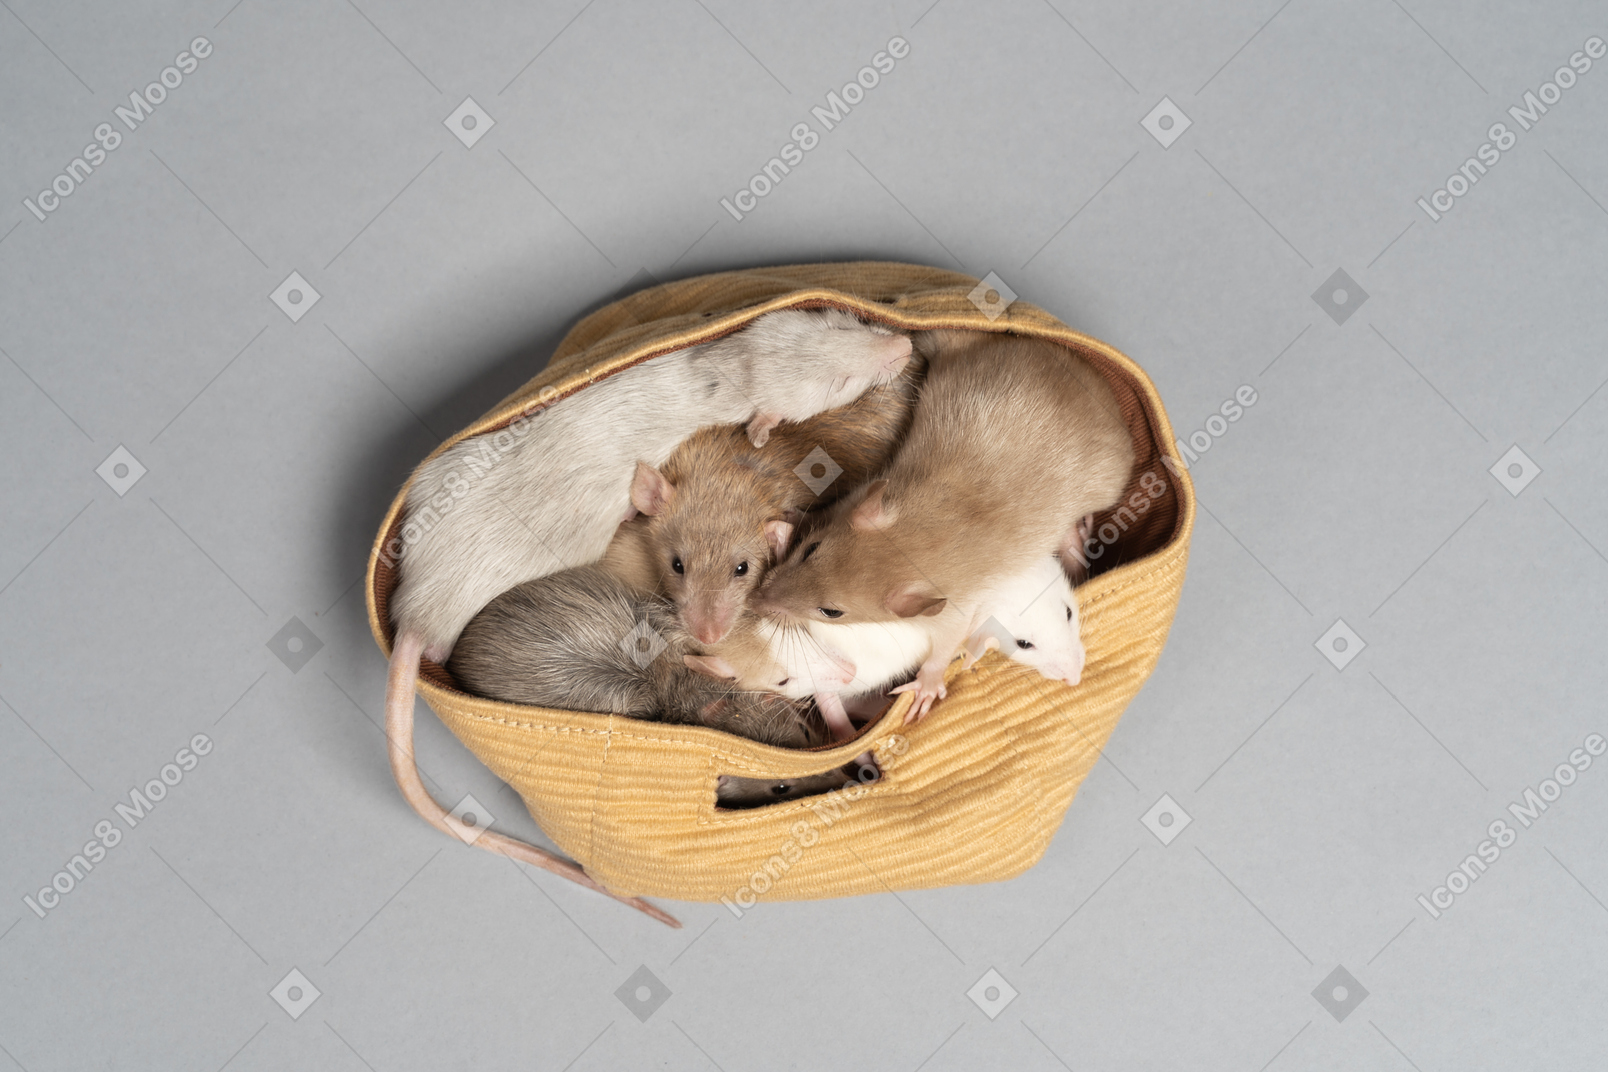 Varios ratones sentados en una bolsa de tela amarilla